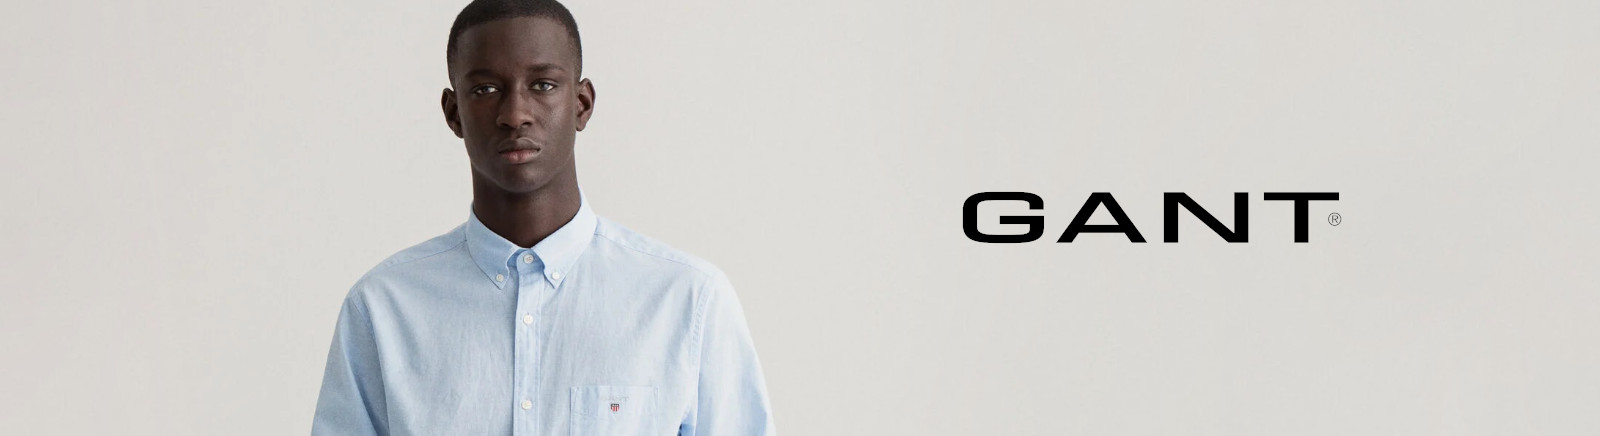 Gant Boots für Damen im Online-Shop von GISY kaufen